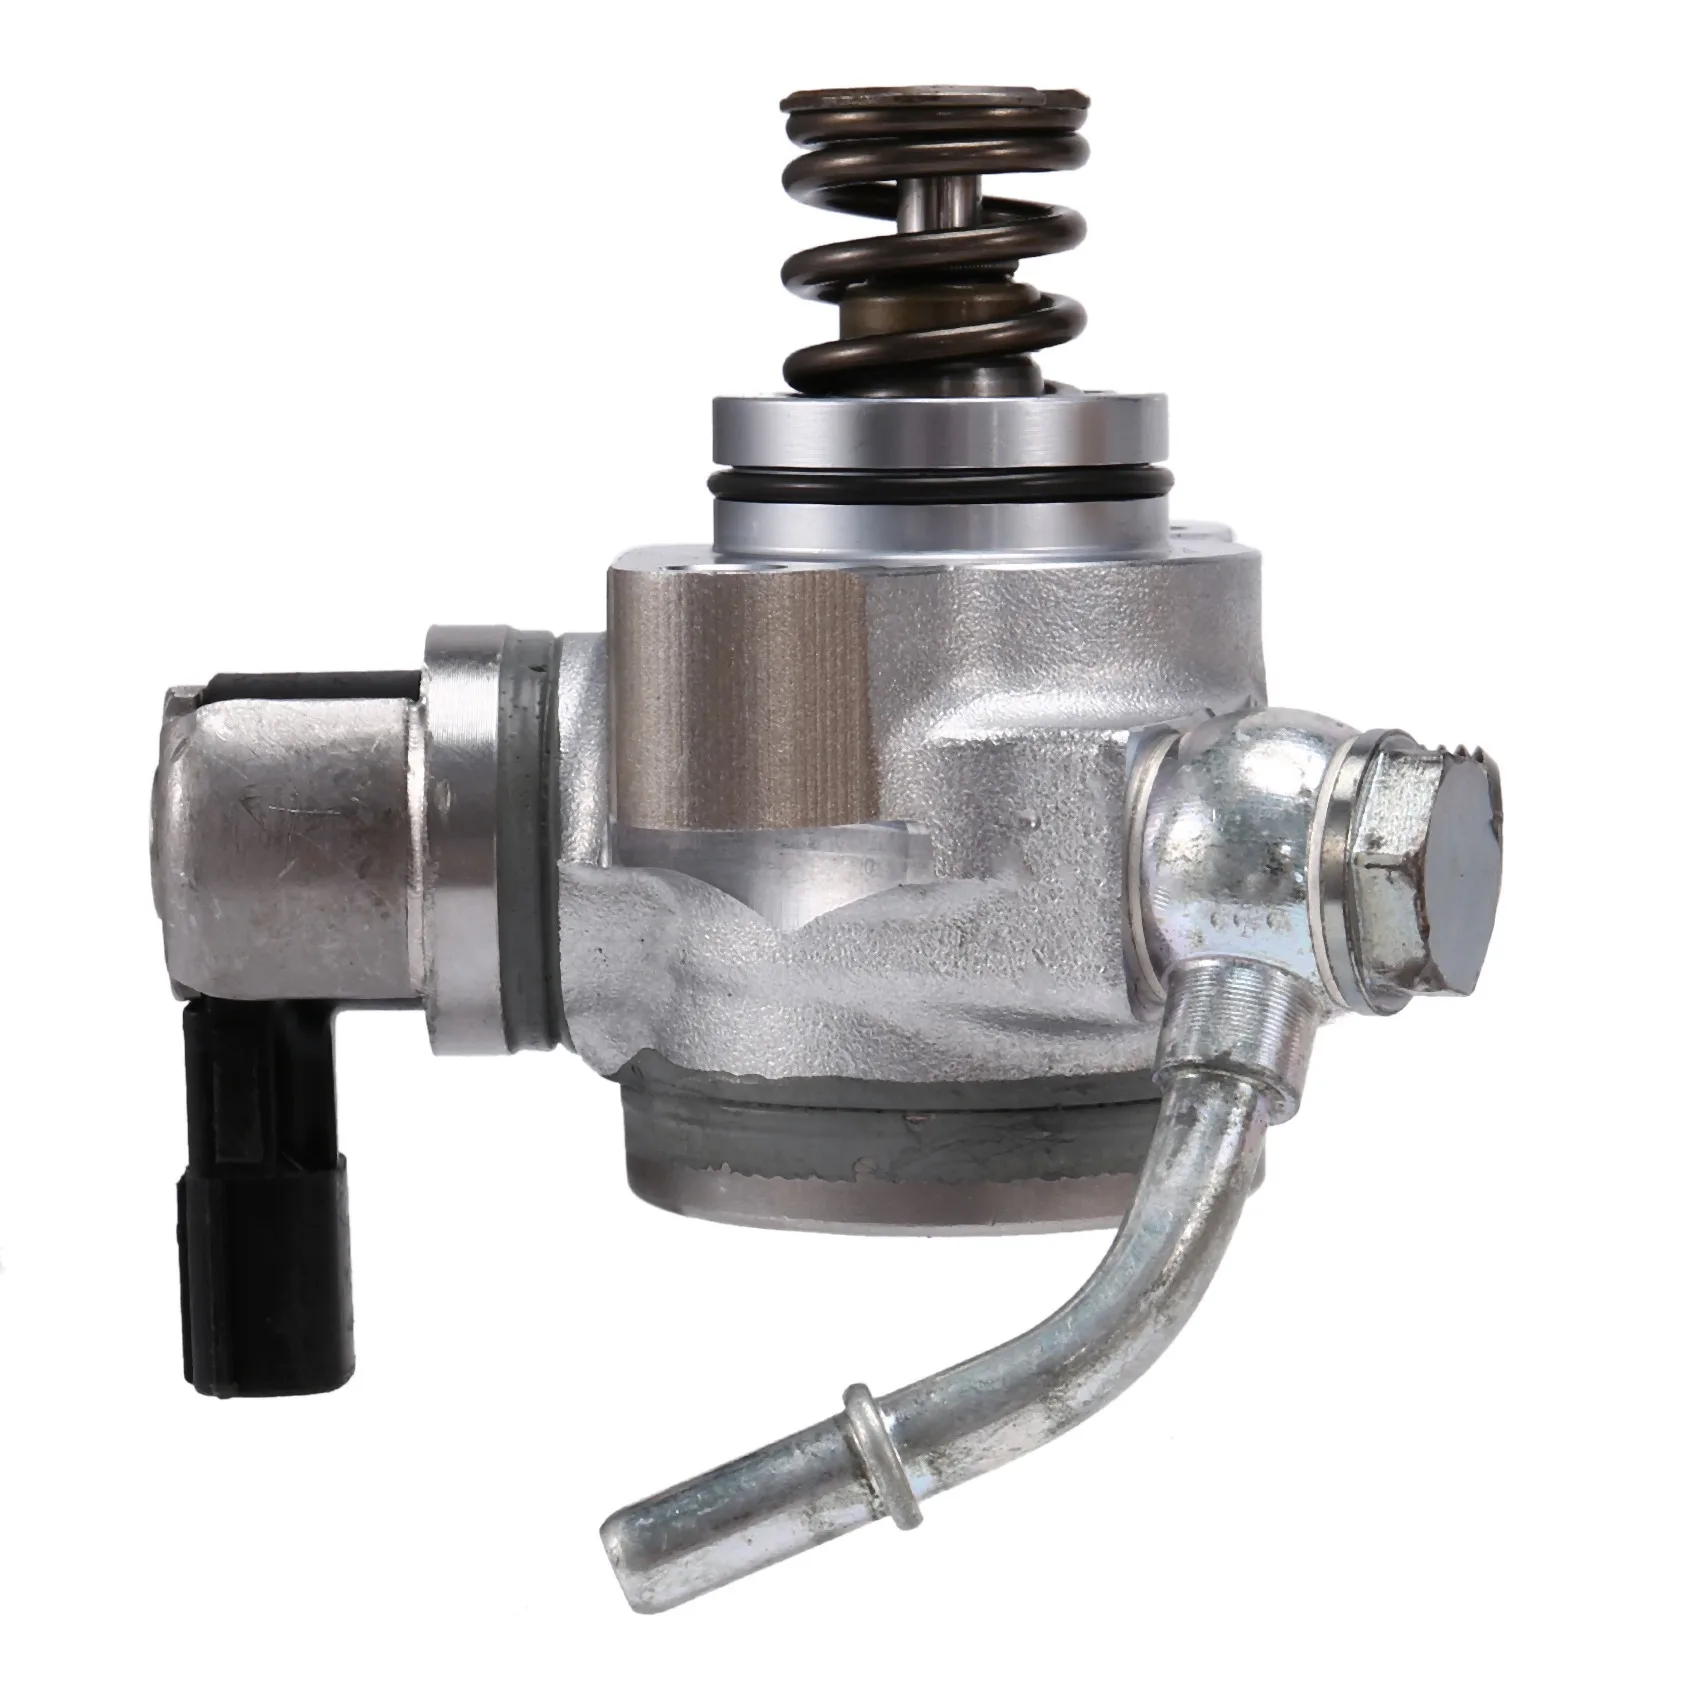 

Car High Pressure Air Pump Oil Pump for Mazda 3 -Gasoline 2.0 SM296100-0020 PE19-20-3F0